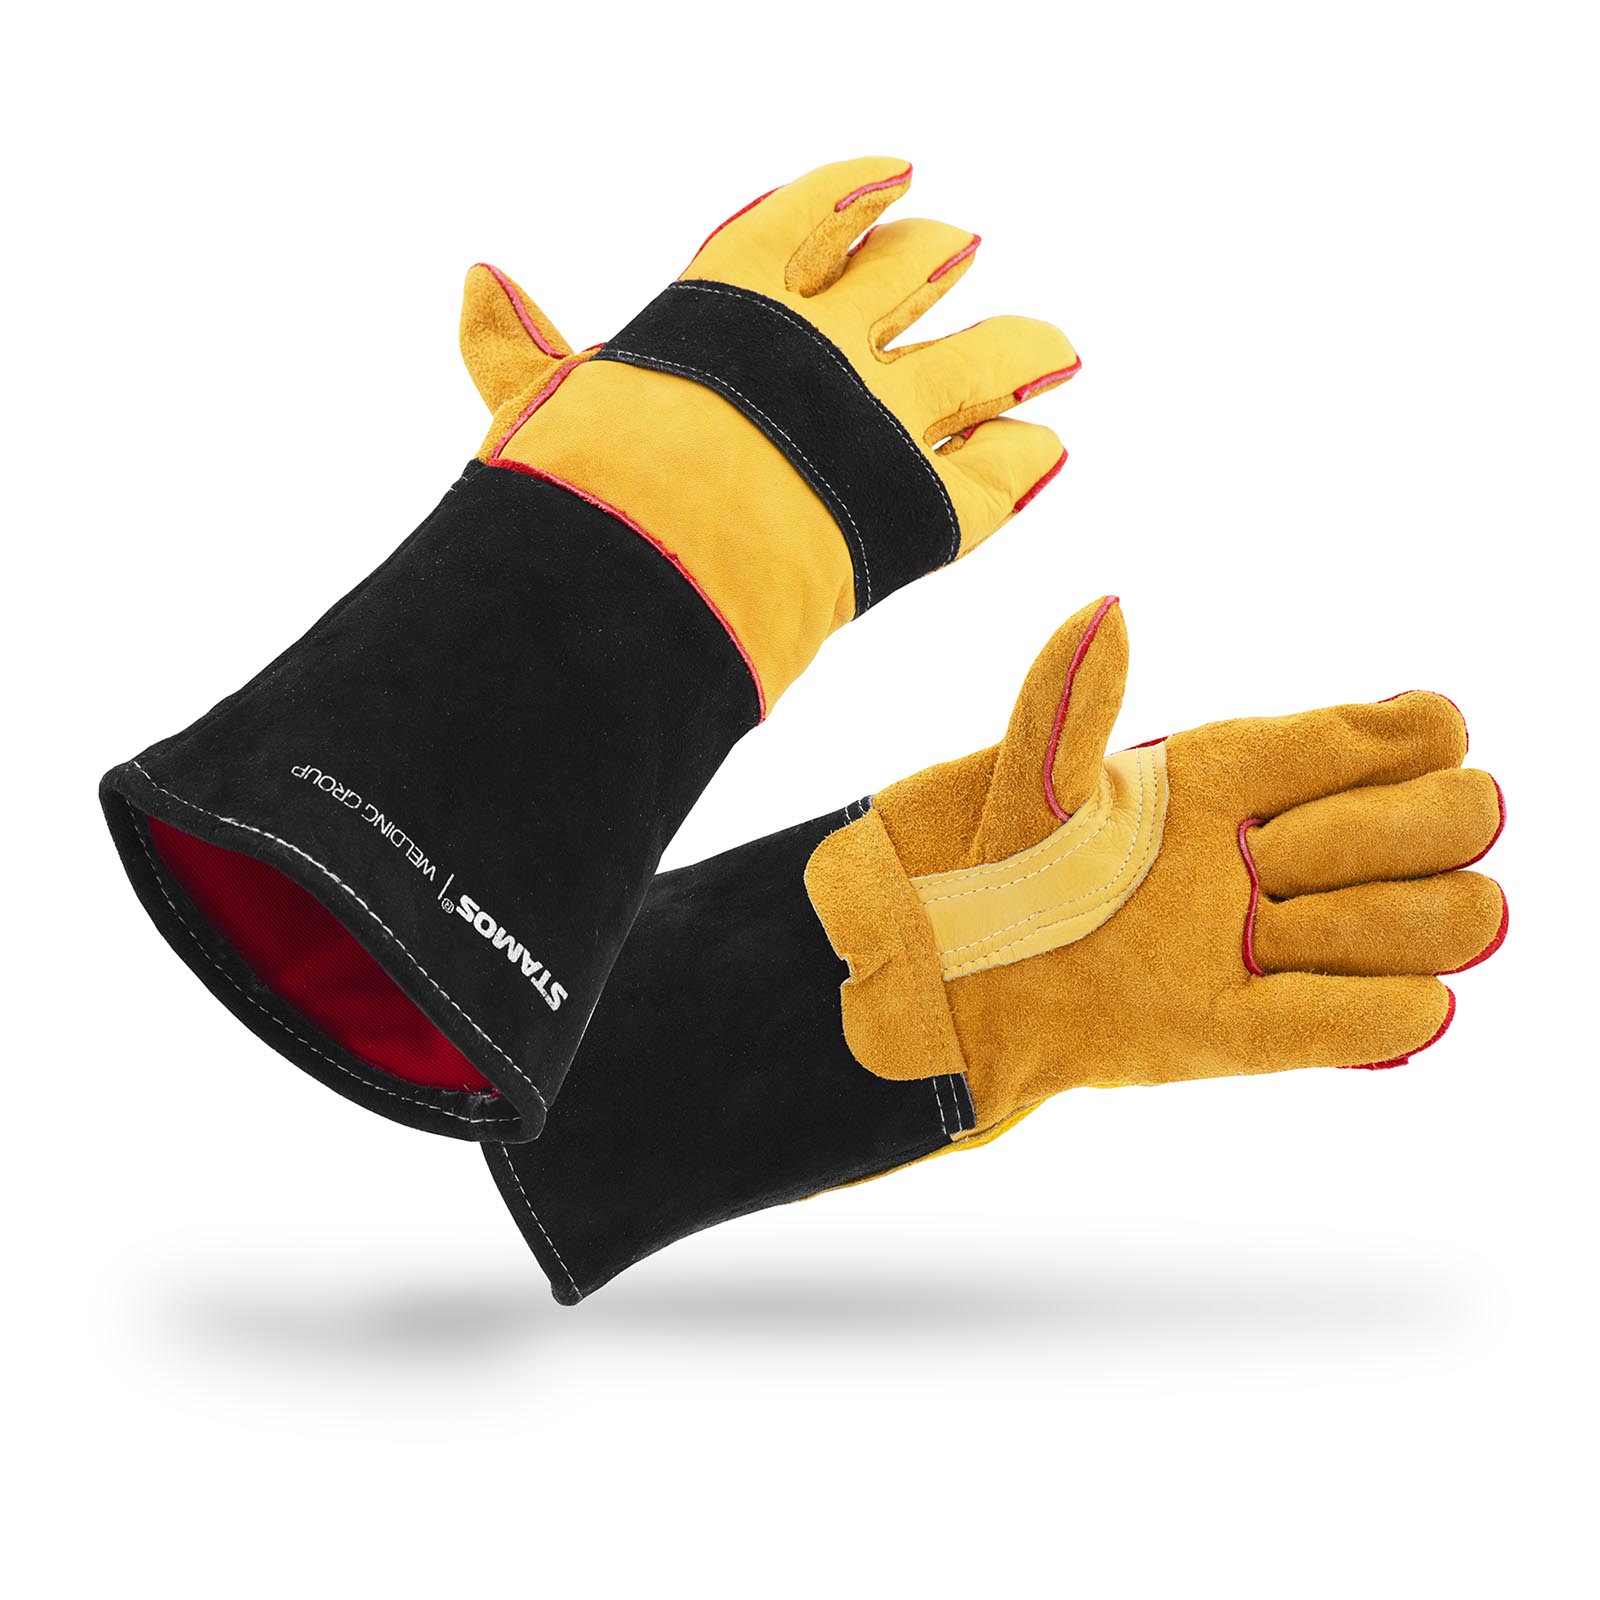 Rękawice spawalnicze - XL